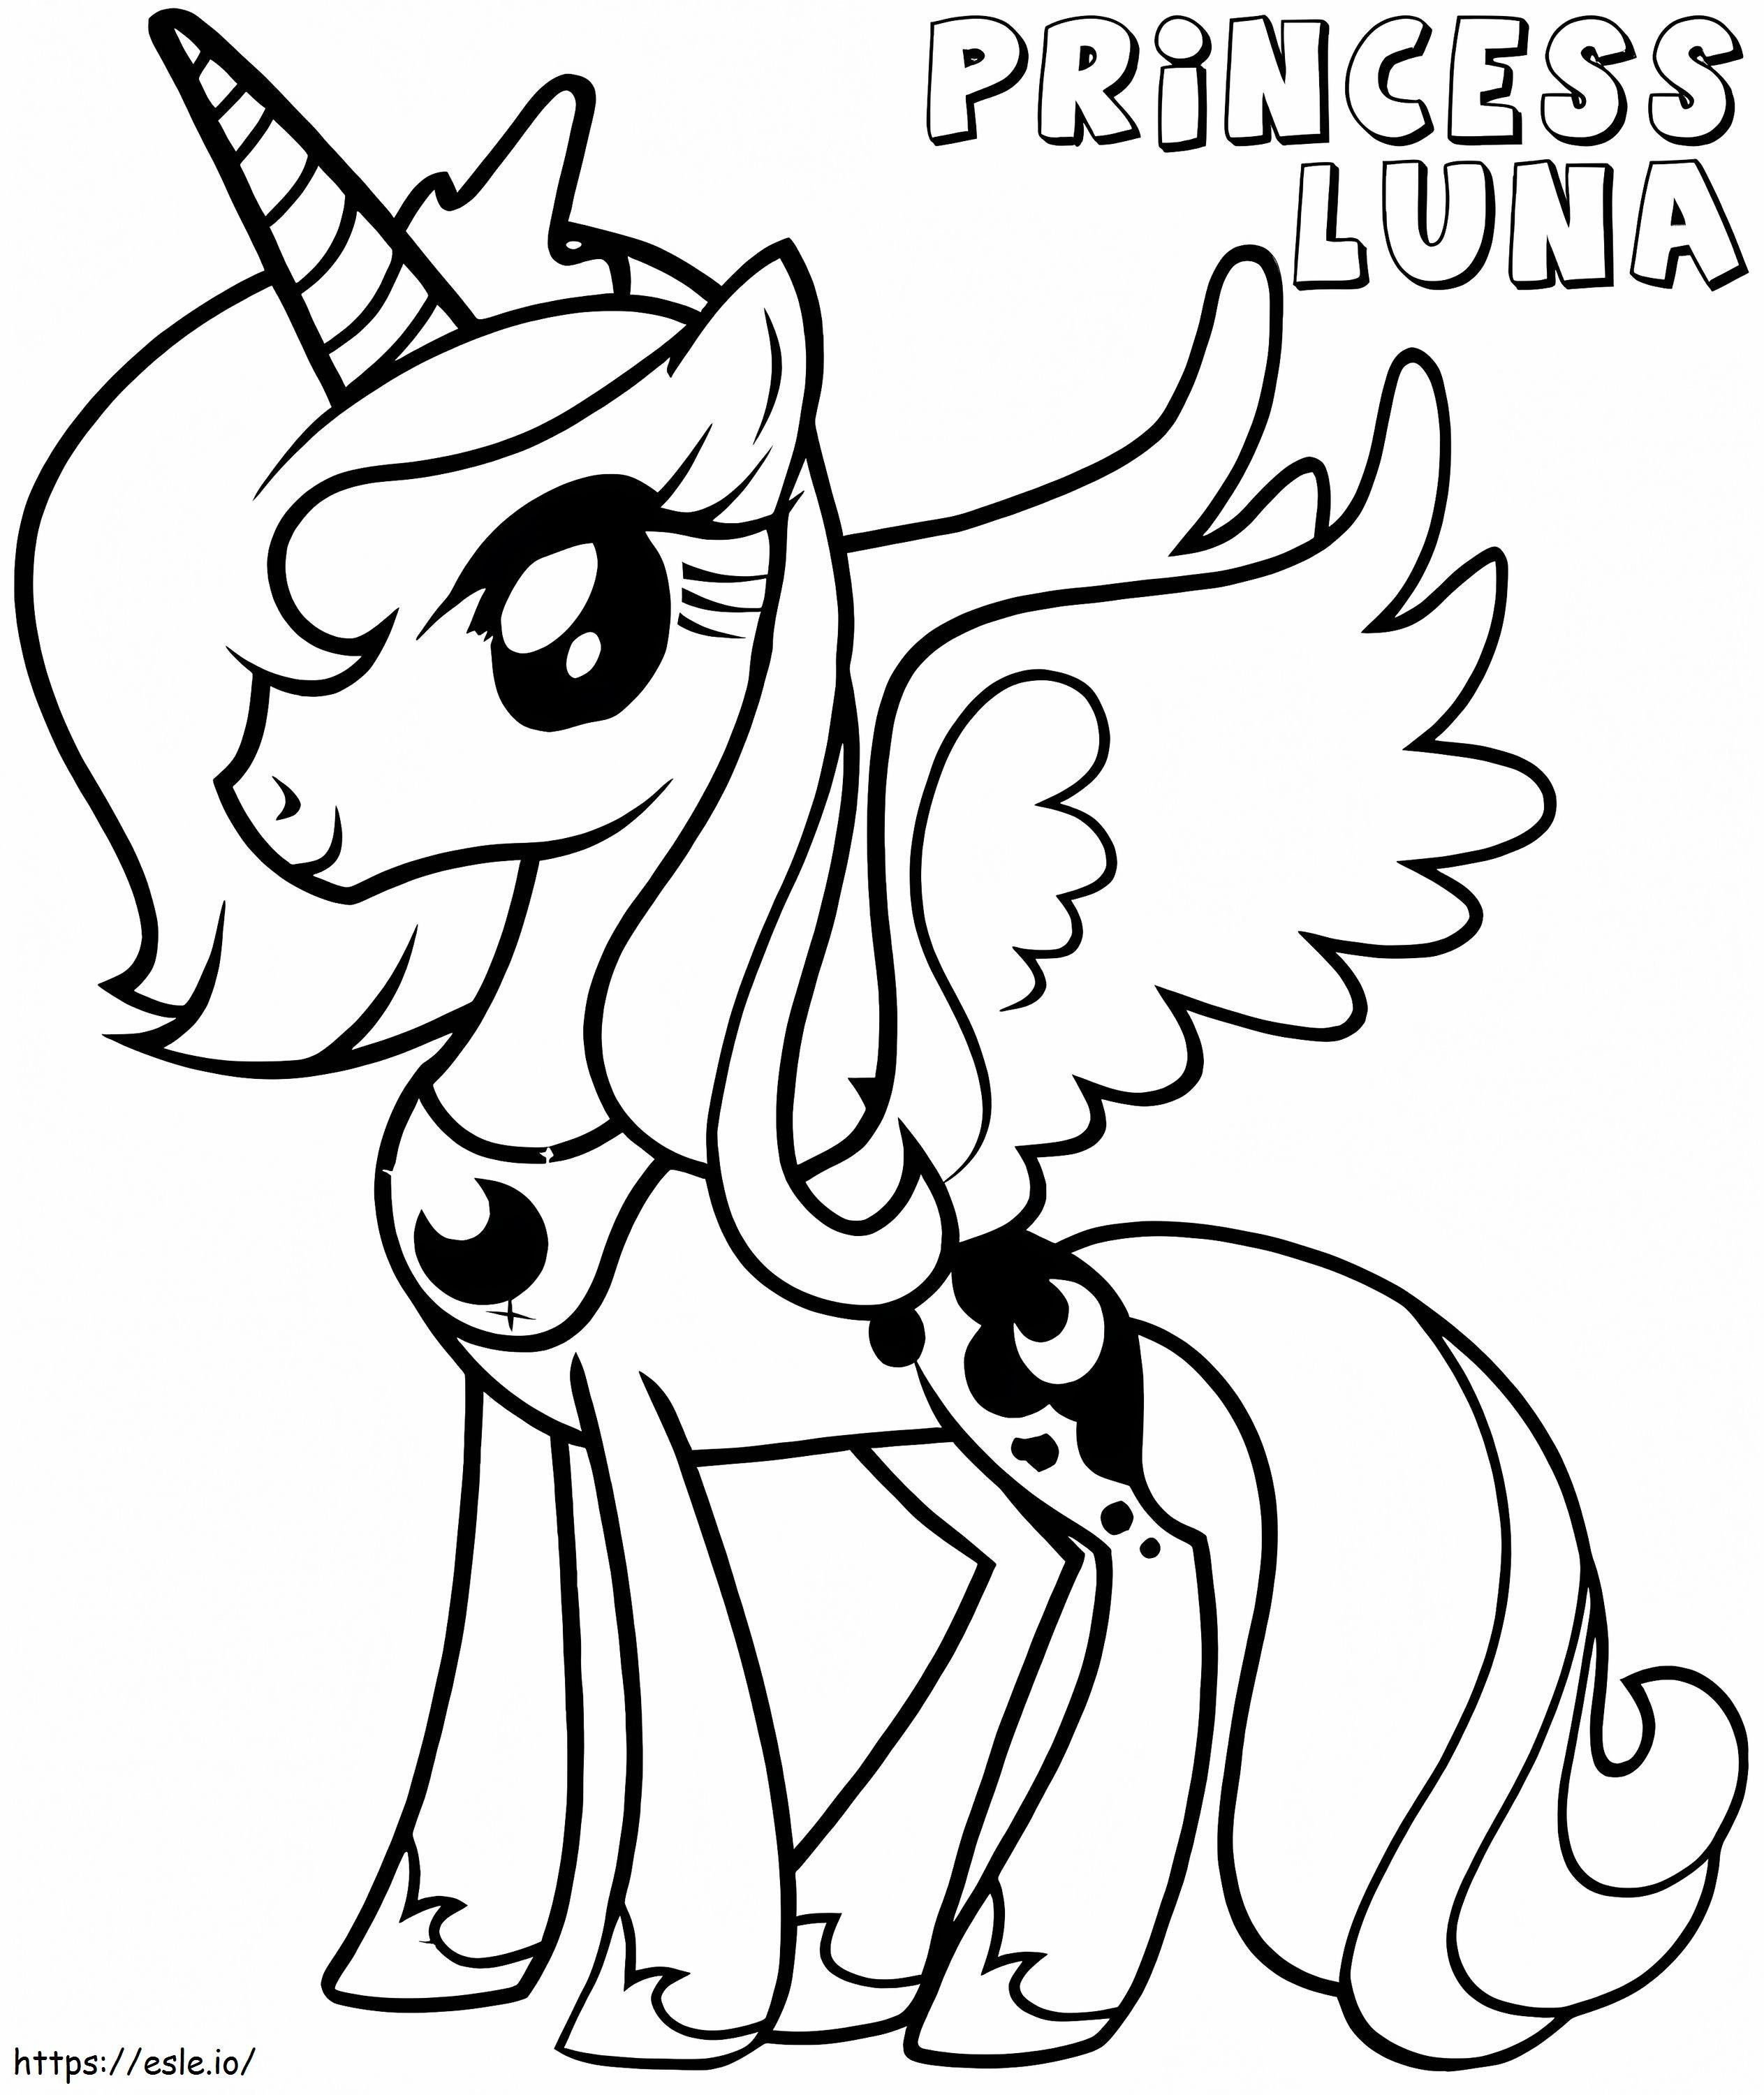 Kleine Prinzessin Luna ausmalbilder